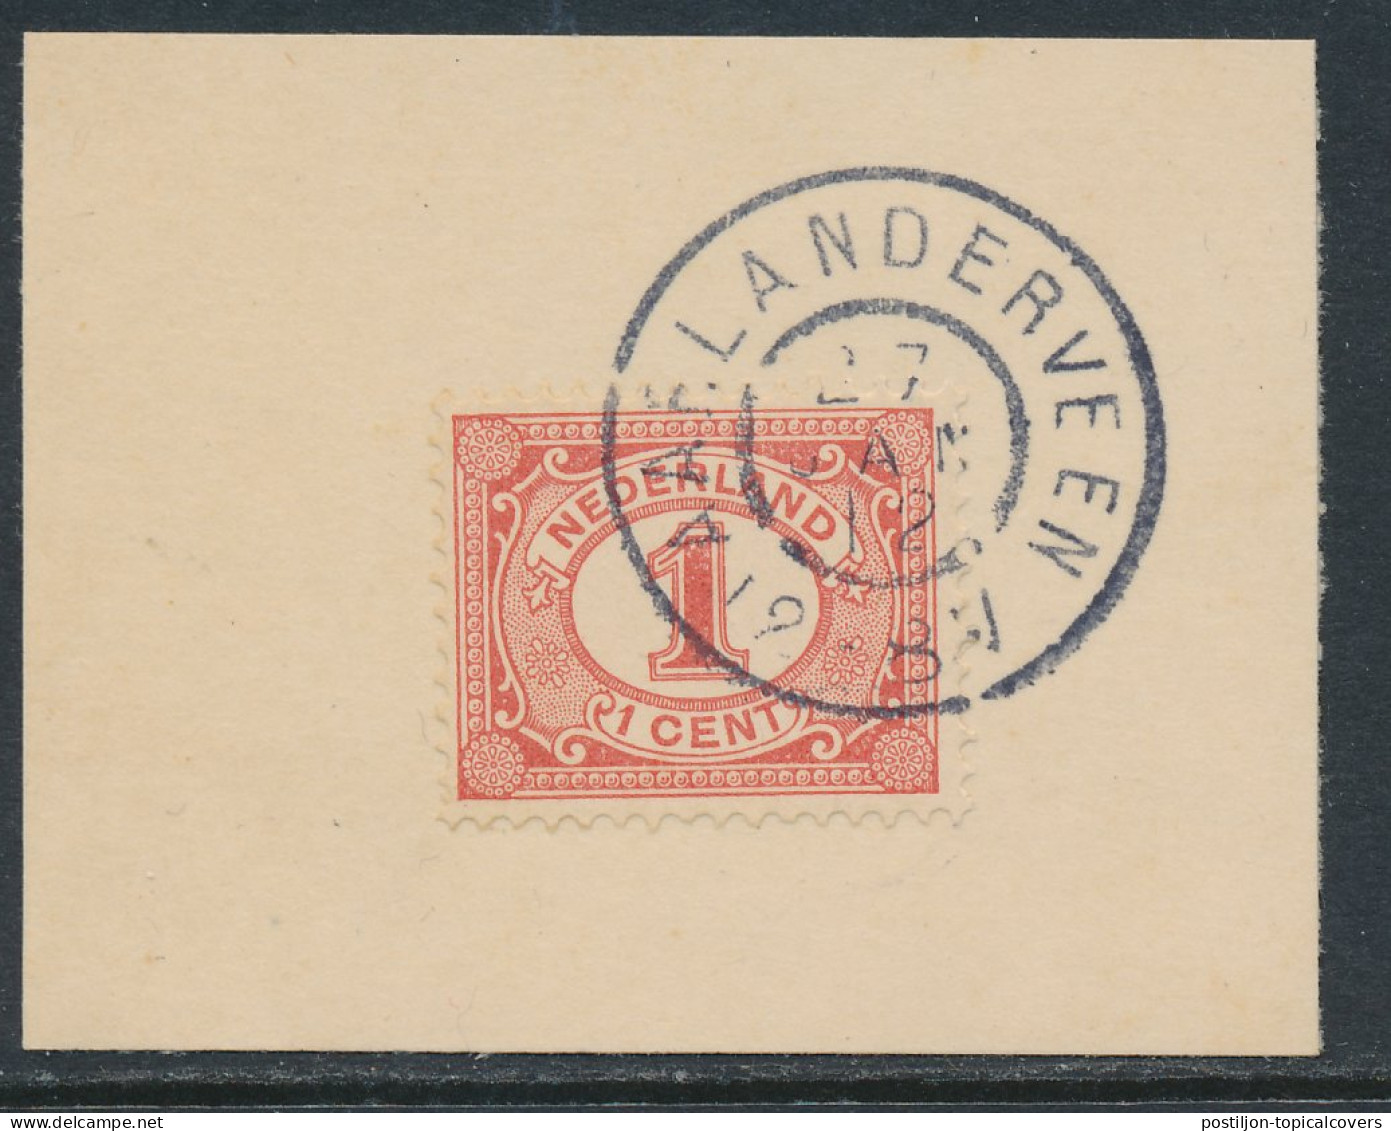 Grootrondstempel Aarlanderveen 1912 - Storia Postale